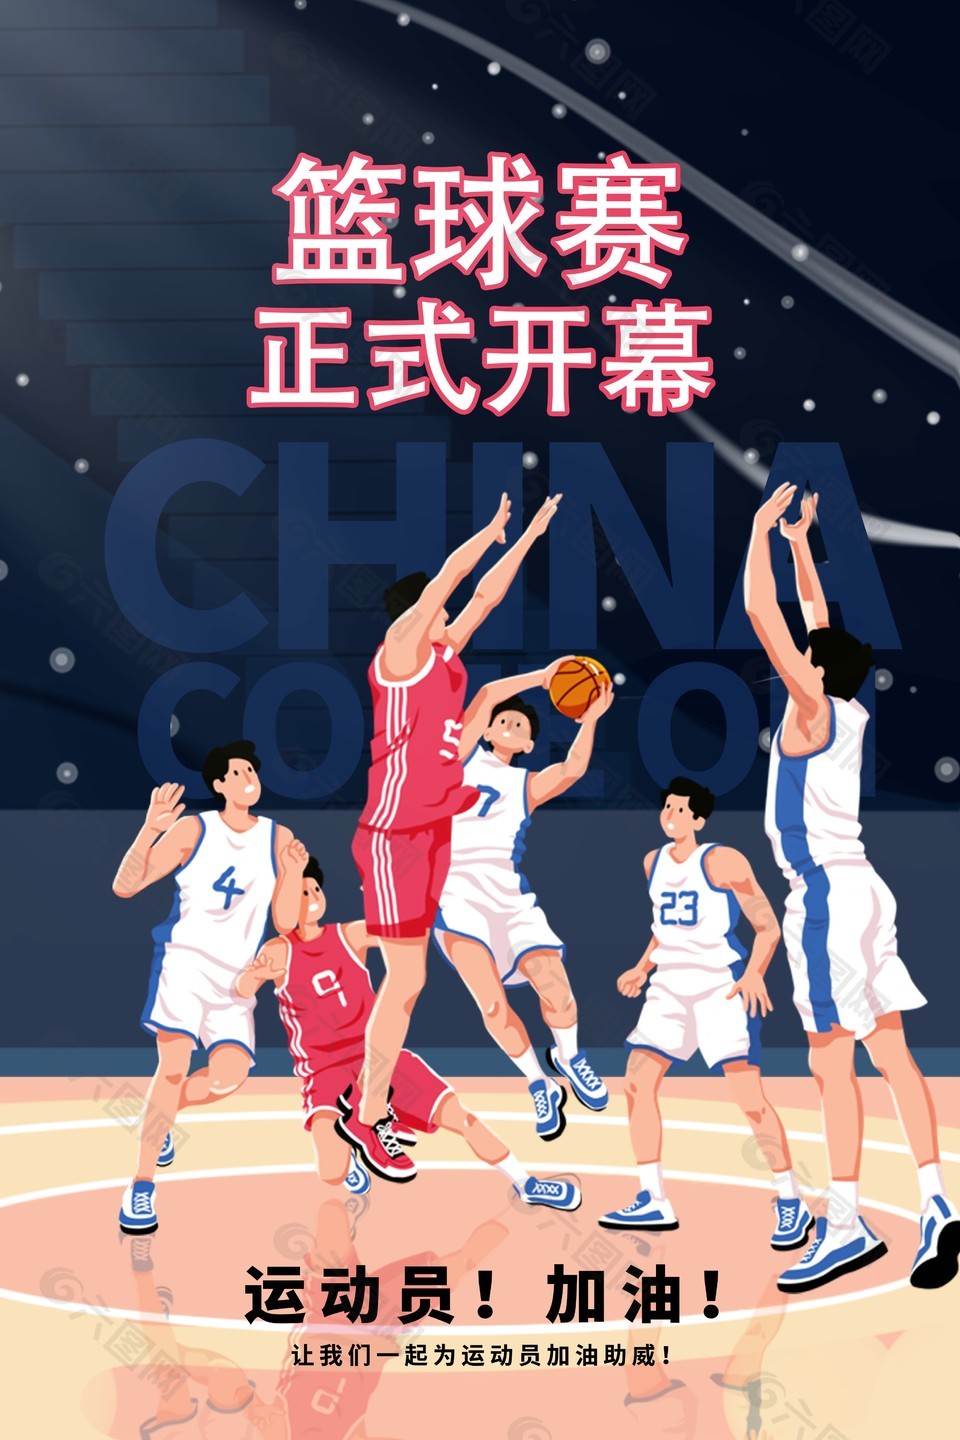 篮球赛开幕创意插画海报素材